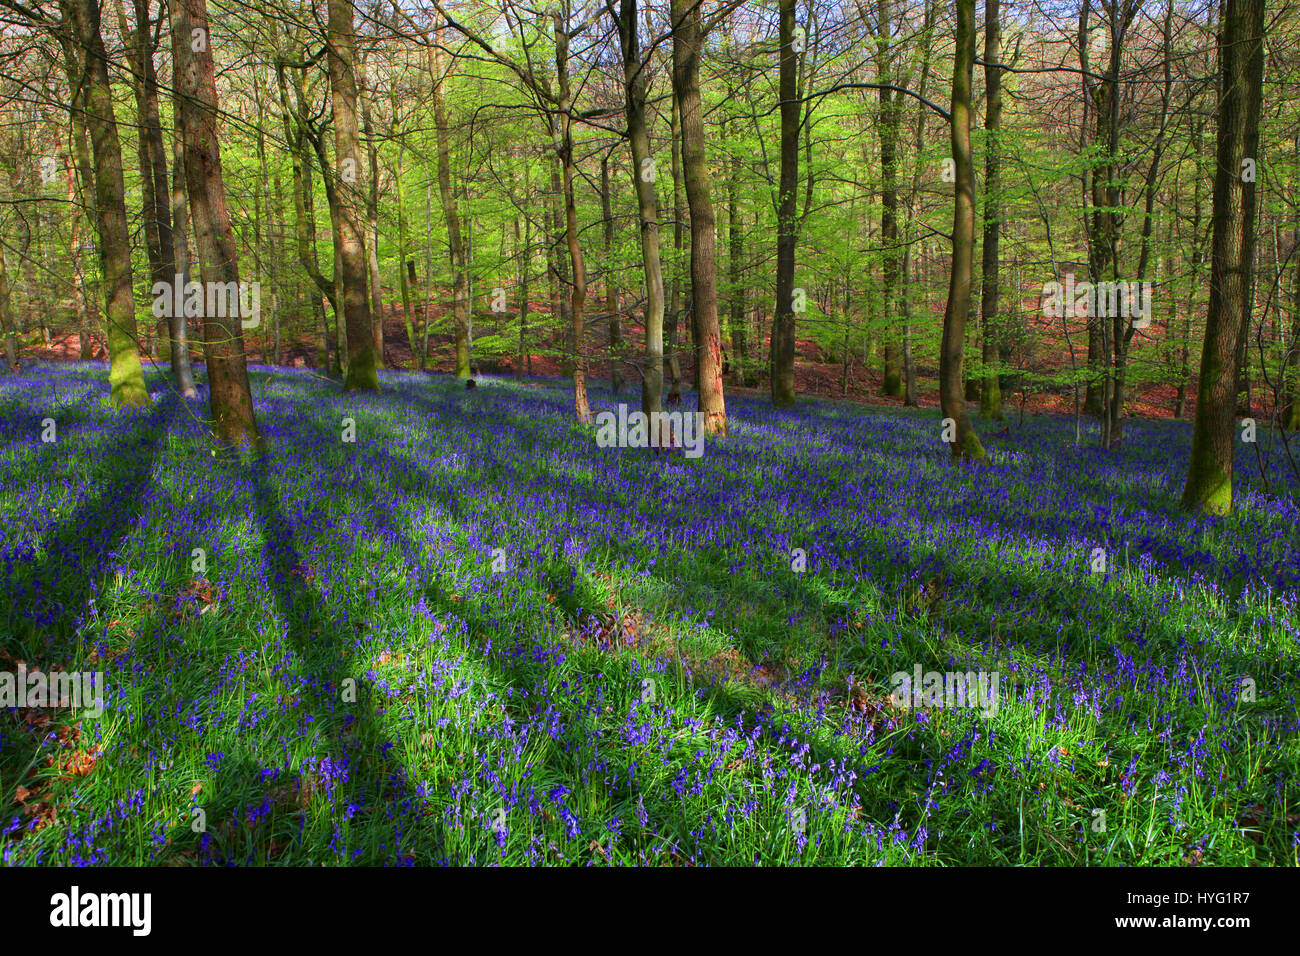 FOREST OF DEAN, UK: A üppigen Teppich aus Glockenblumen hat der Forest of Dean auf spektakuläre Weise abgedeckt. Bilder zeigen das Moos bedeckten Baumstämme vollständig vom Meer von blau und grün aus diesen Frühling Zeit Favoriten umgeben. Stockfoto